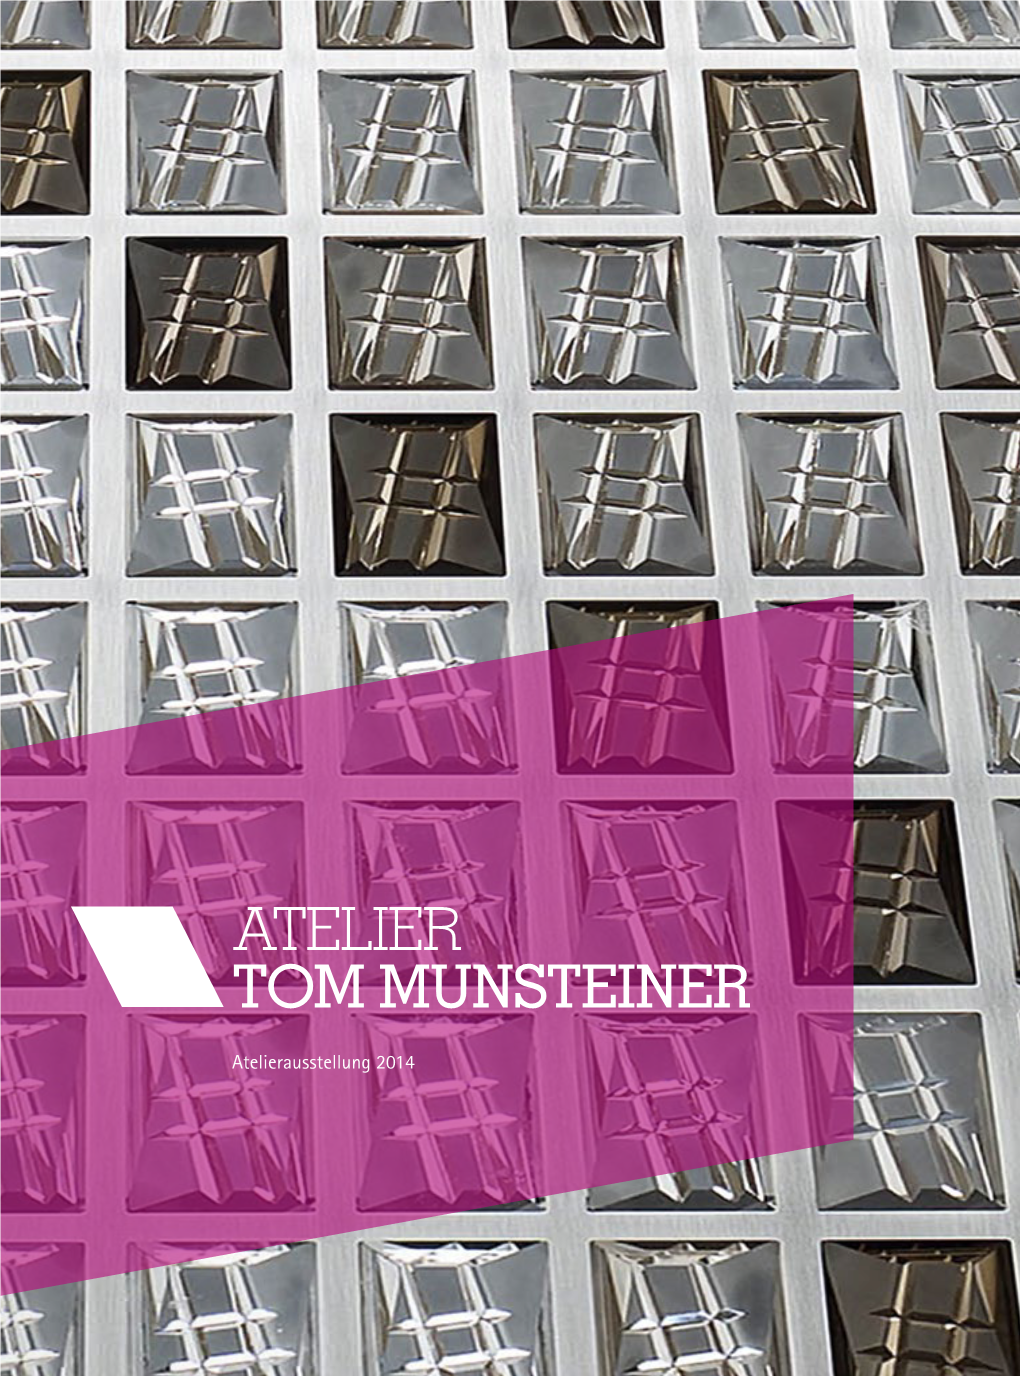 Atelier Tom Munsteiner